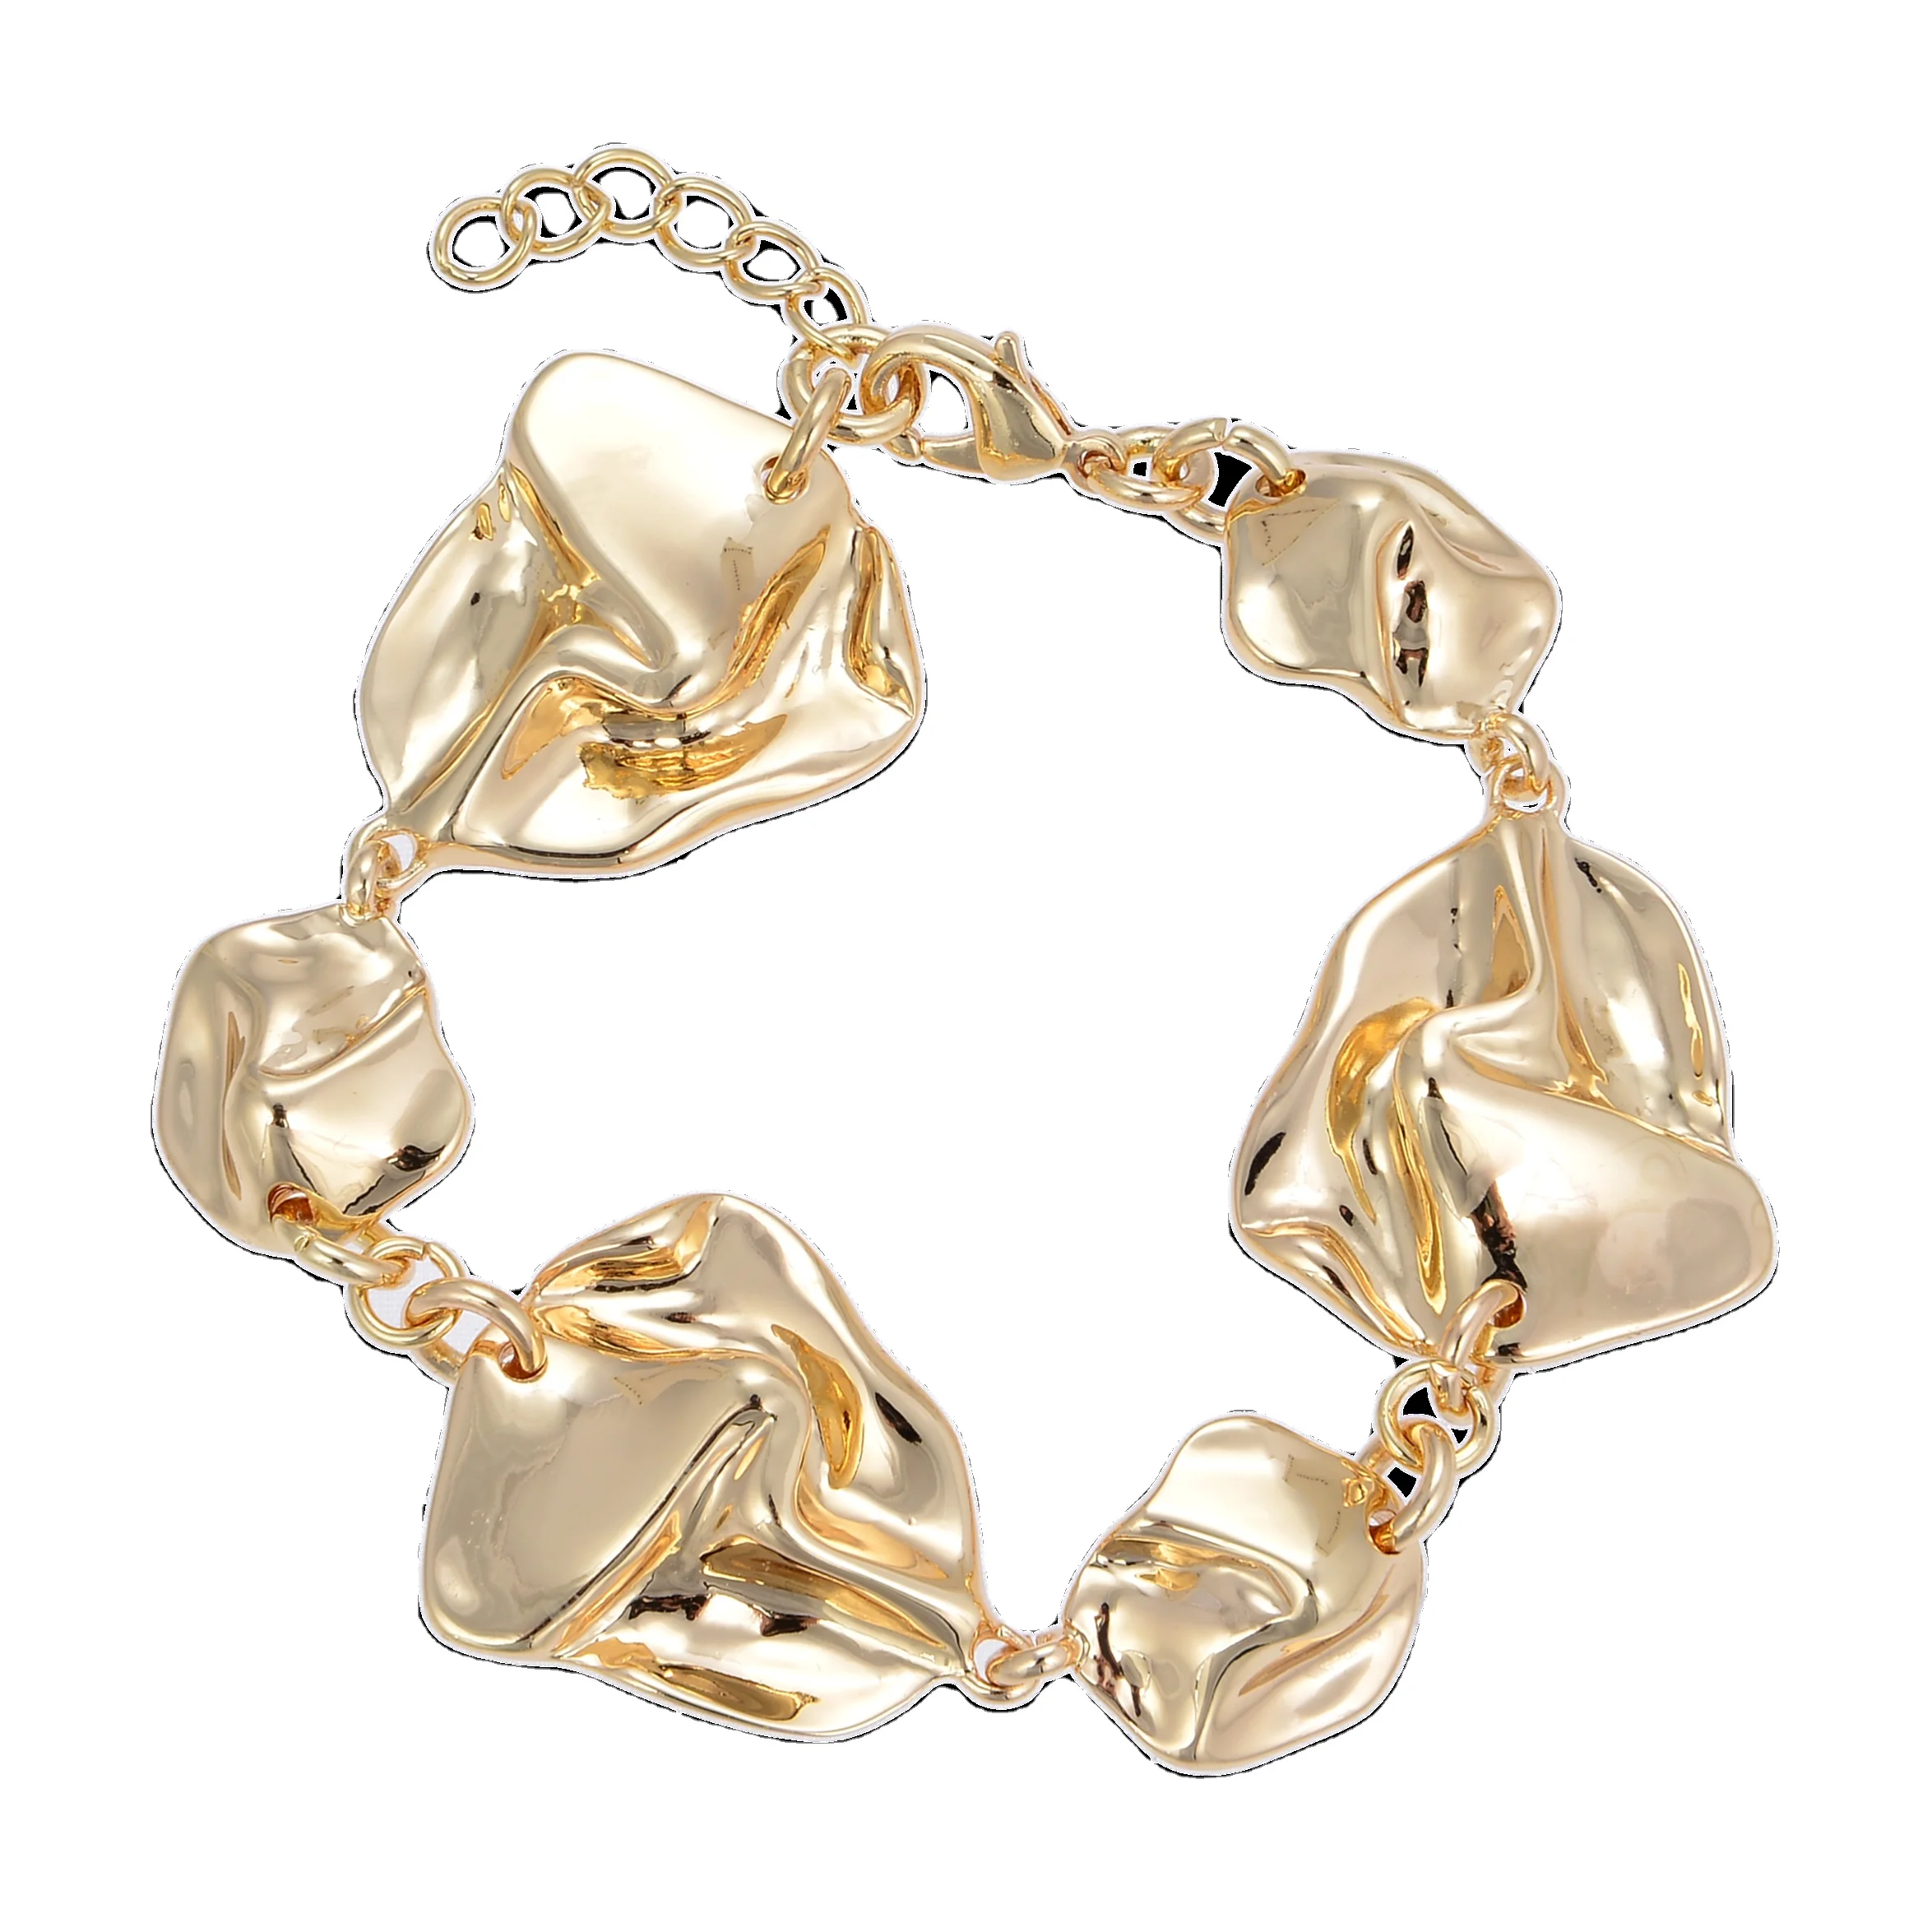 China Promotional Products Brass Bracelet Melt Gold Chain Bracelet